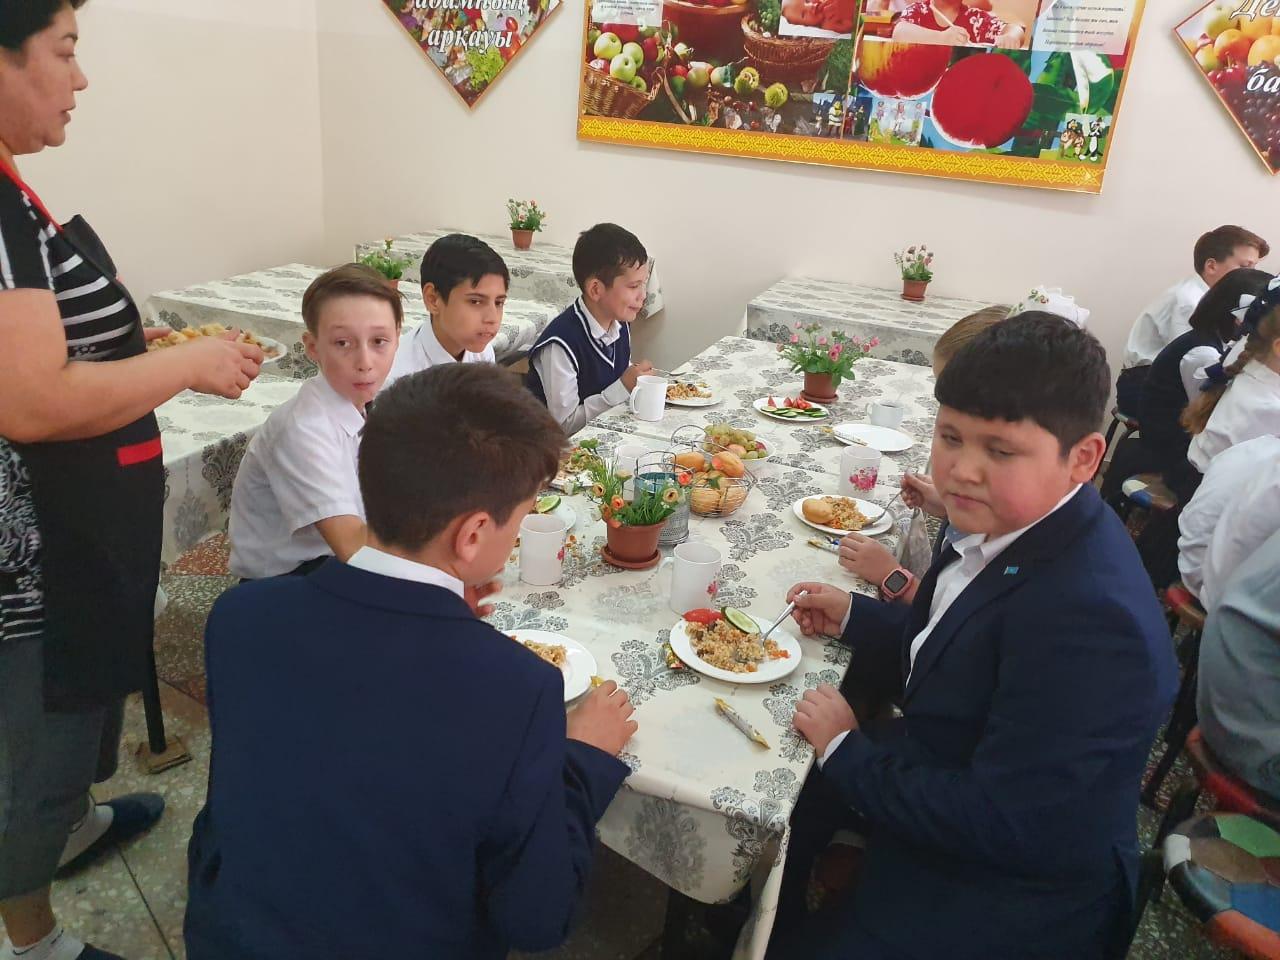 Сегодня ИП "Болганбекова" в рамках акции "Дорога в школу" в школьной столовой накрыли обед для 50 детей из малообеспеченных и многодетных семей.